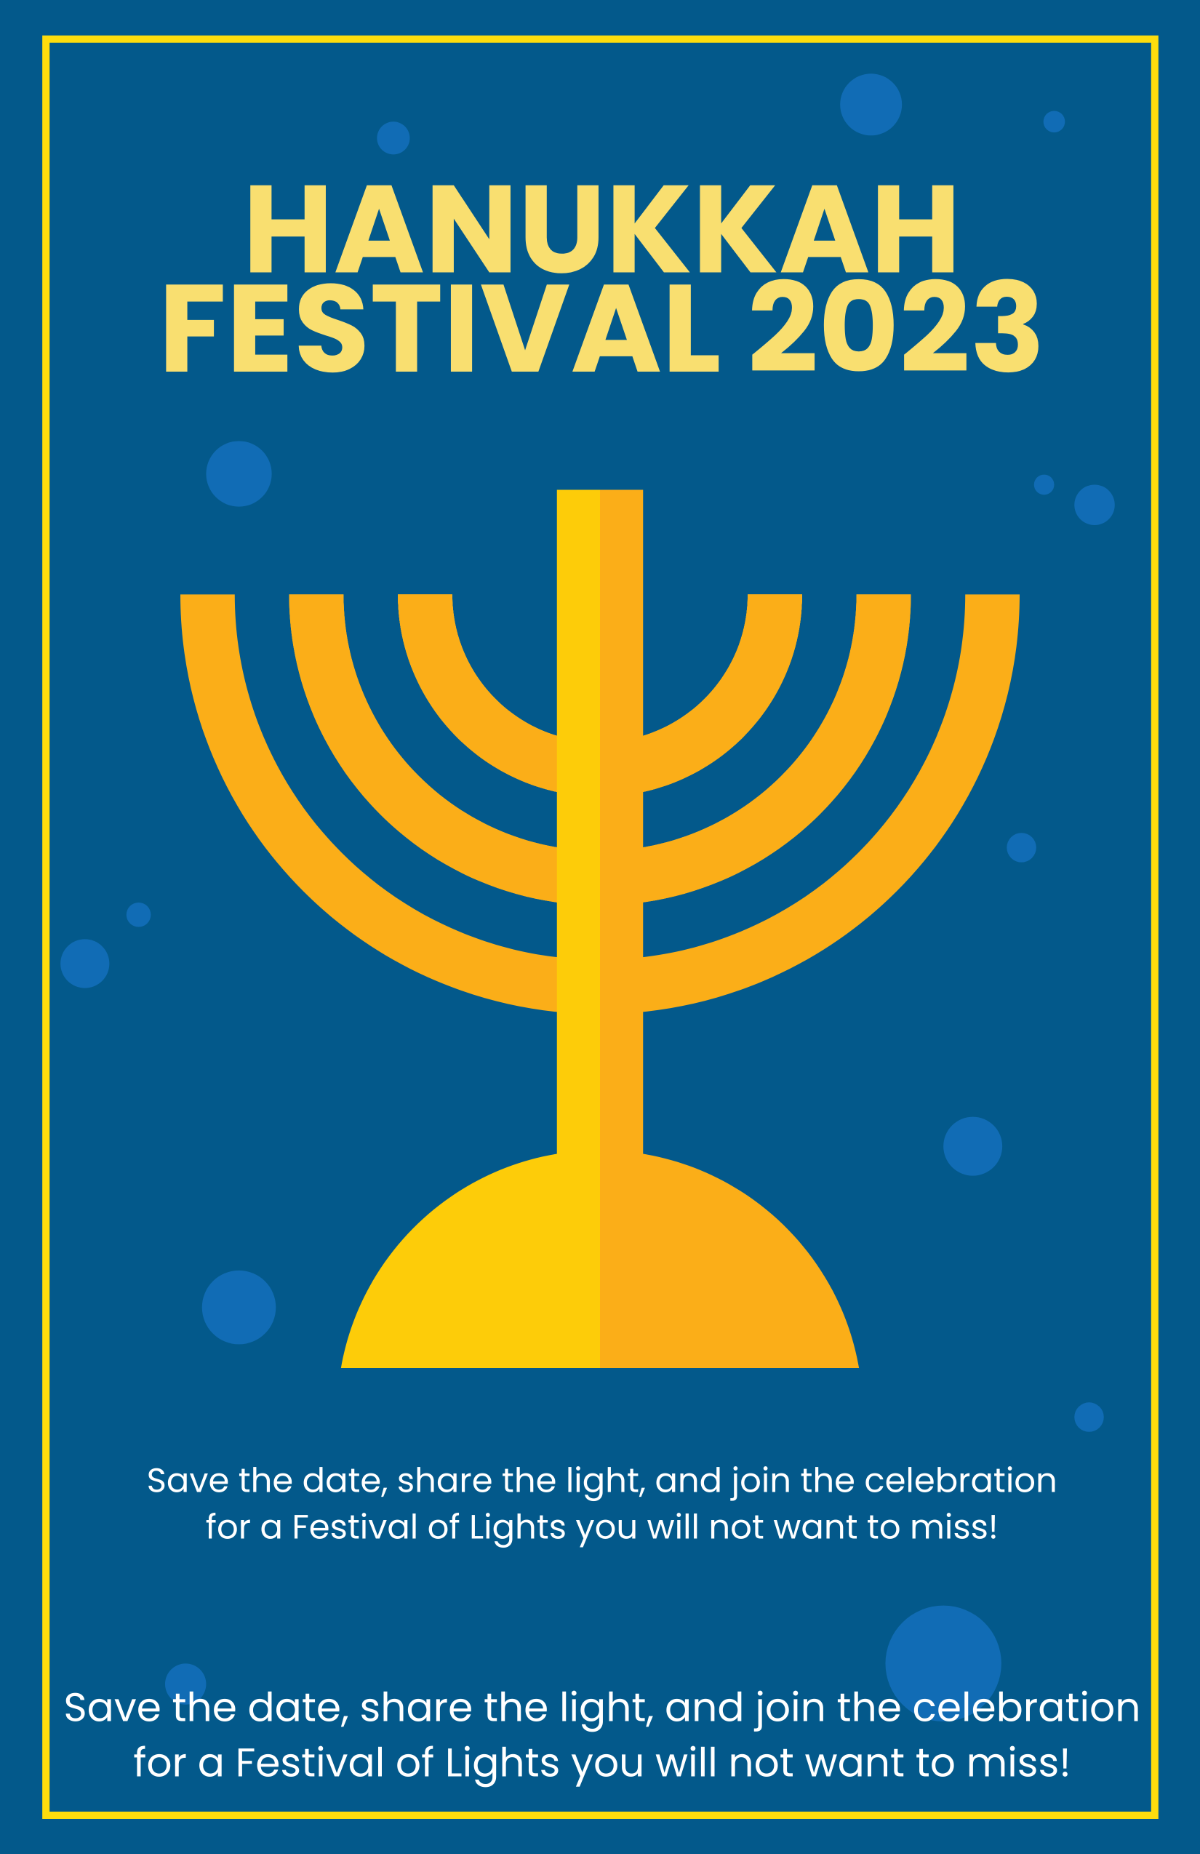 Hanukkah Festival Poster